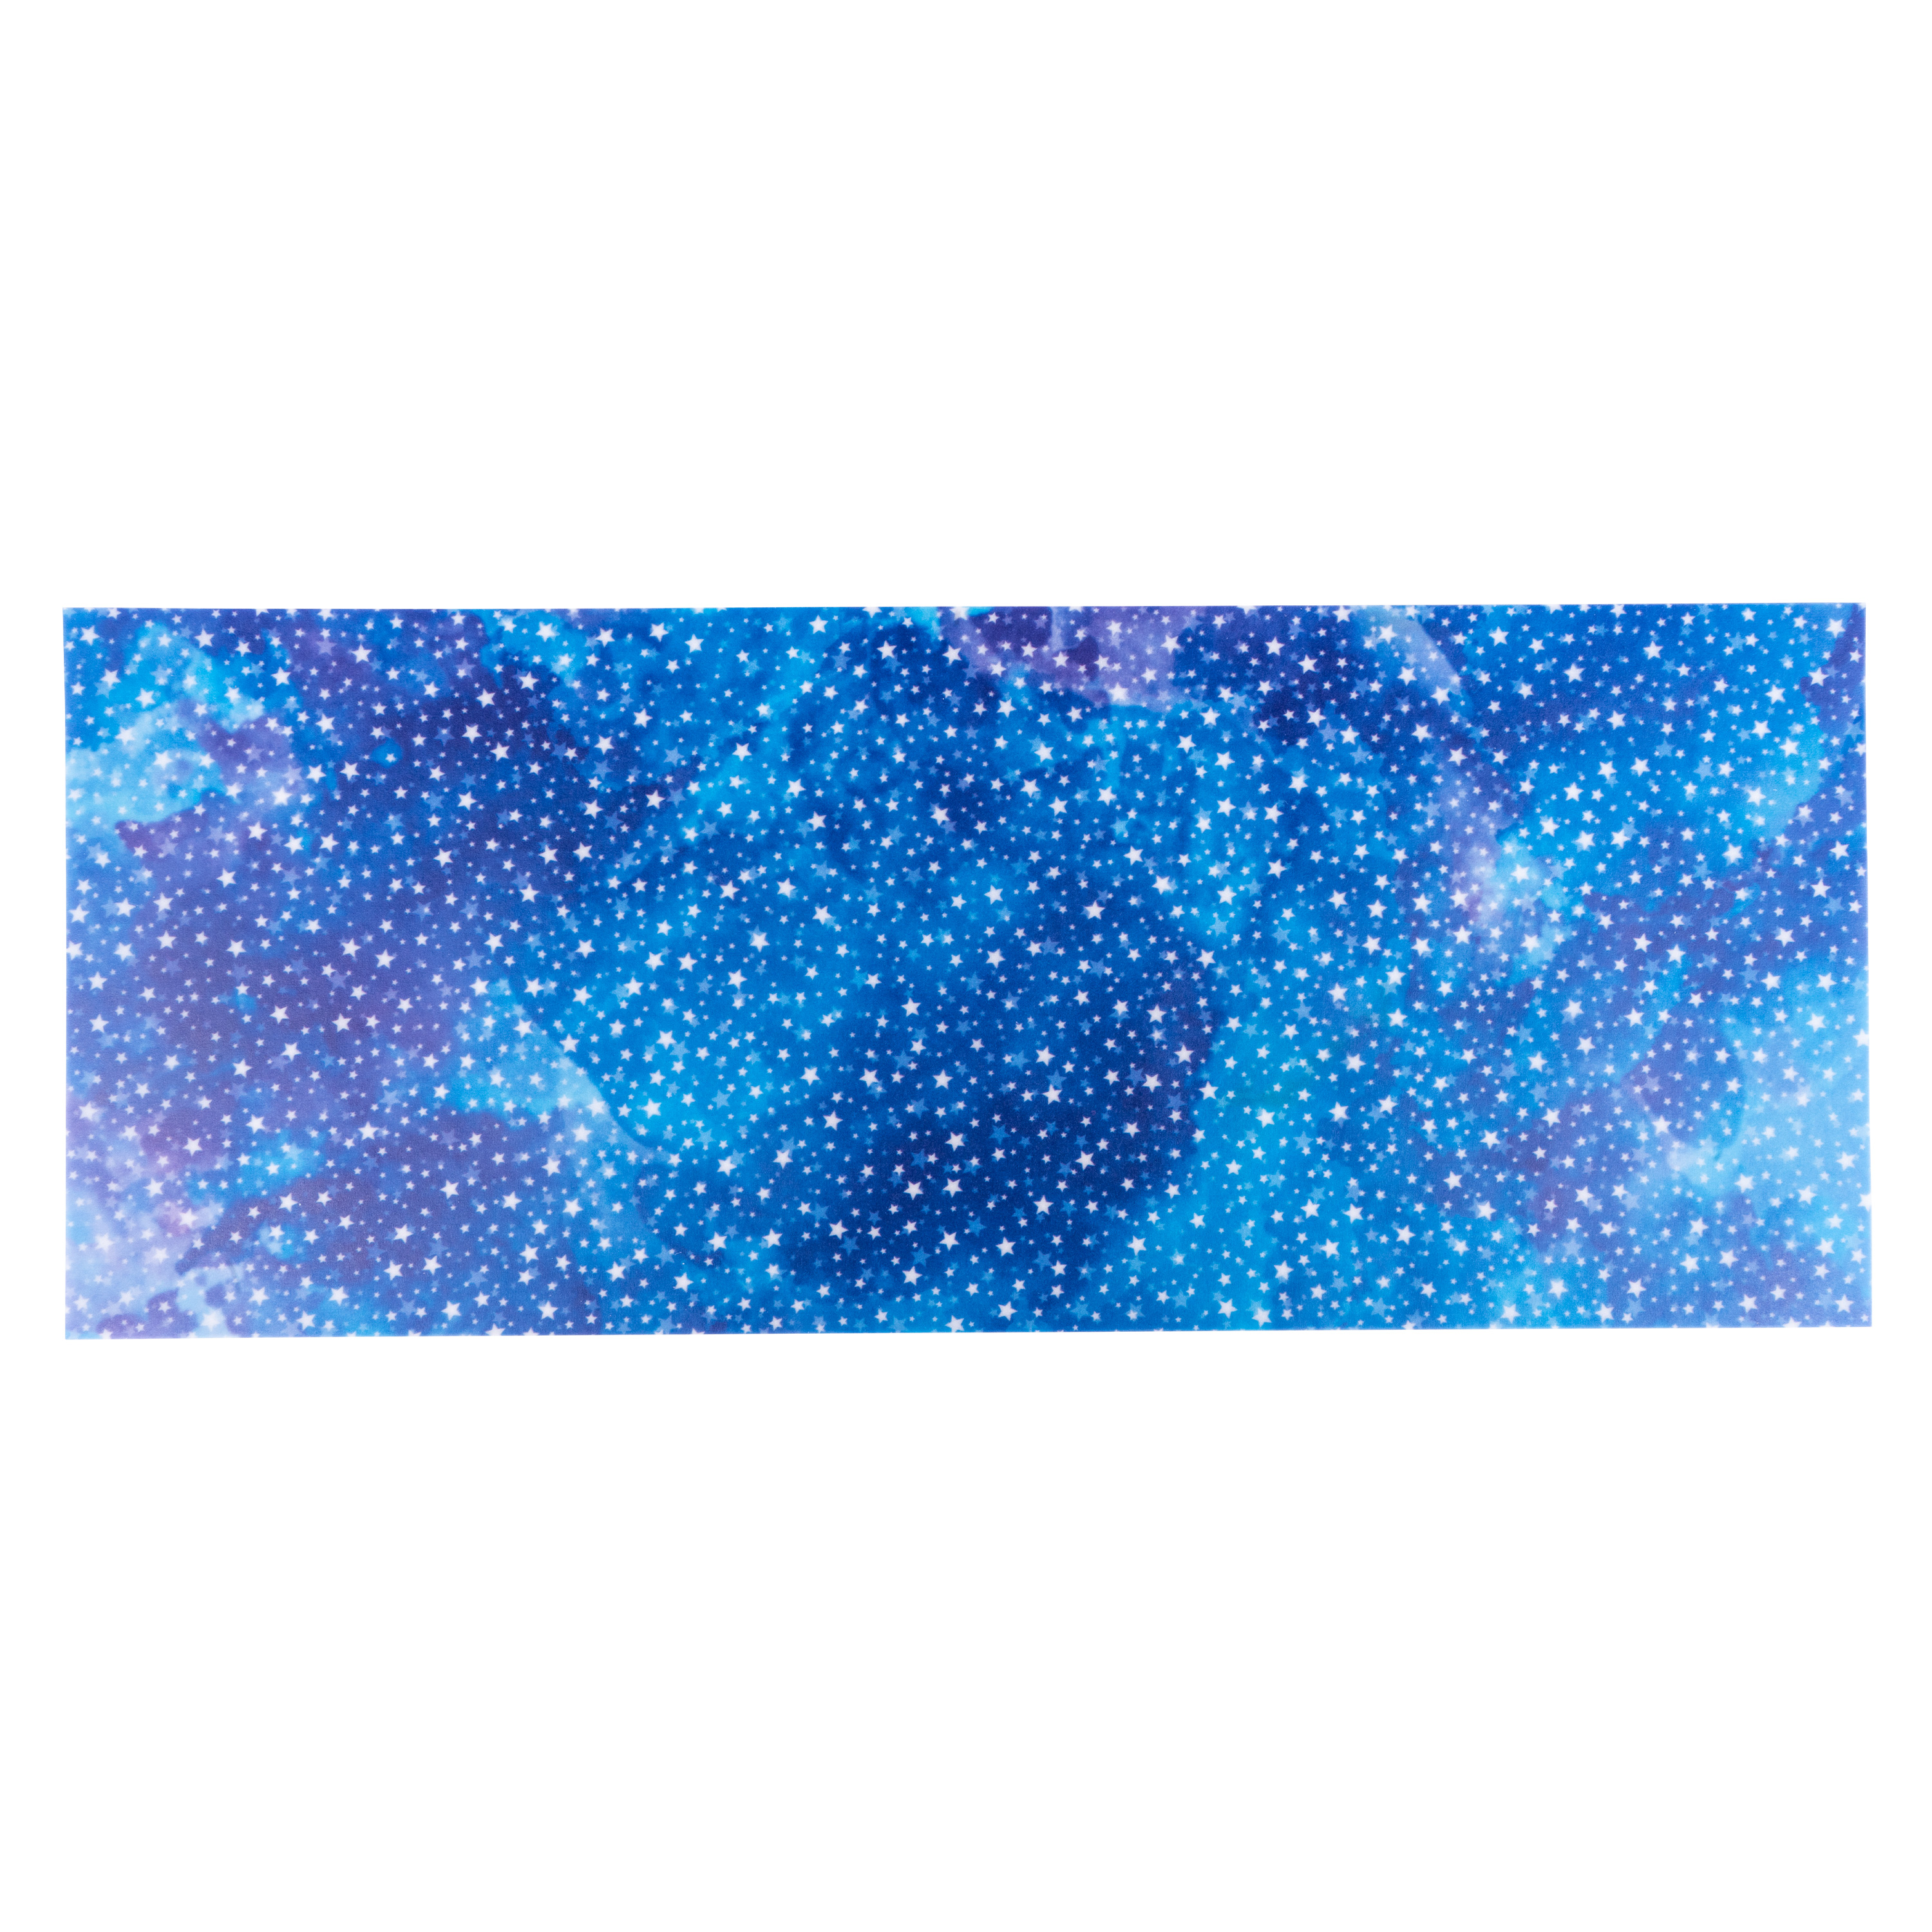 Laternenzuschnitte 'Sternennacht blau' für Käsedosen Ø 15,3